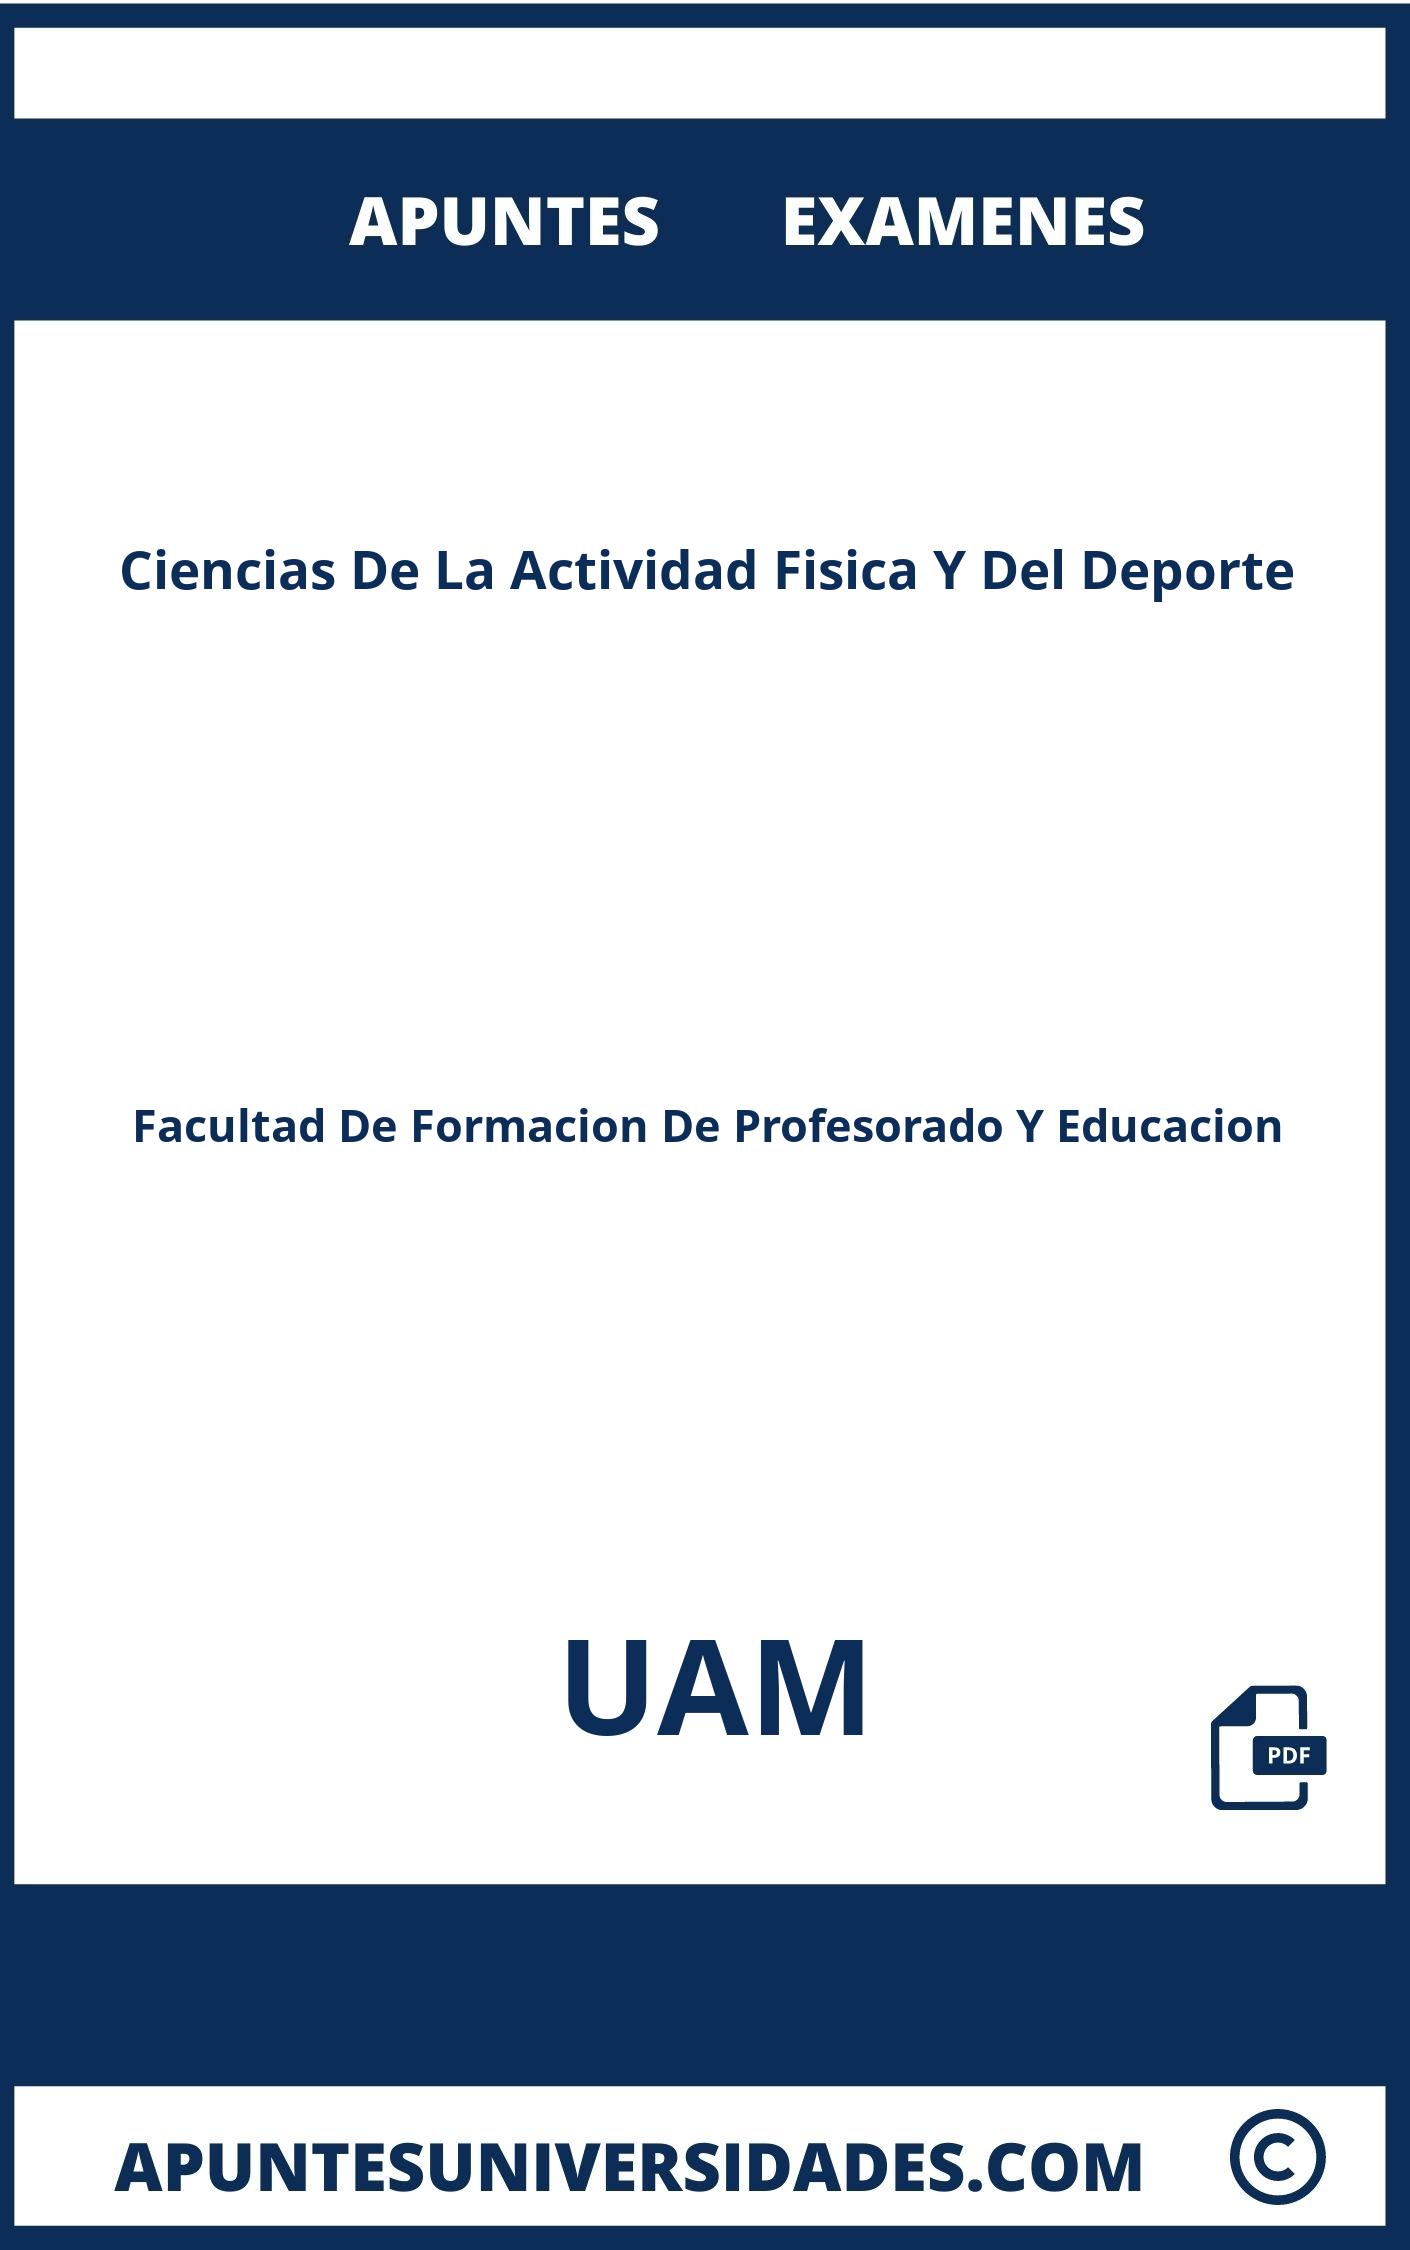 Apuntes y Examenes de Ciencias De La Actividad Fisica Y Del Deporte UAM